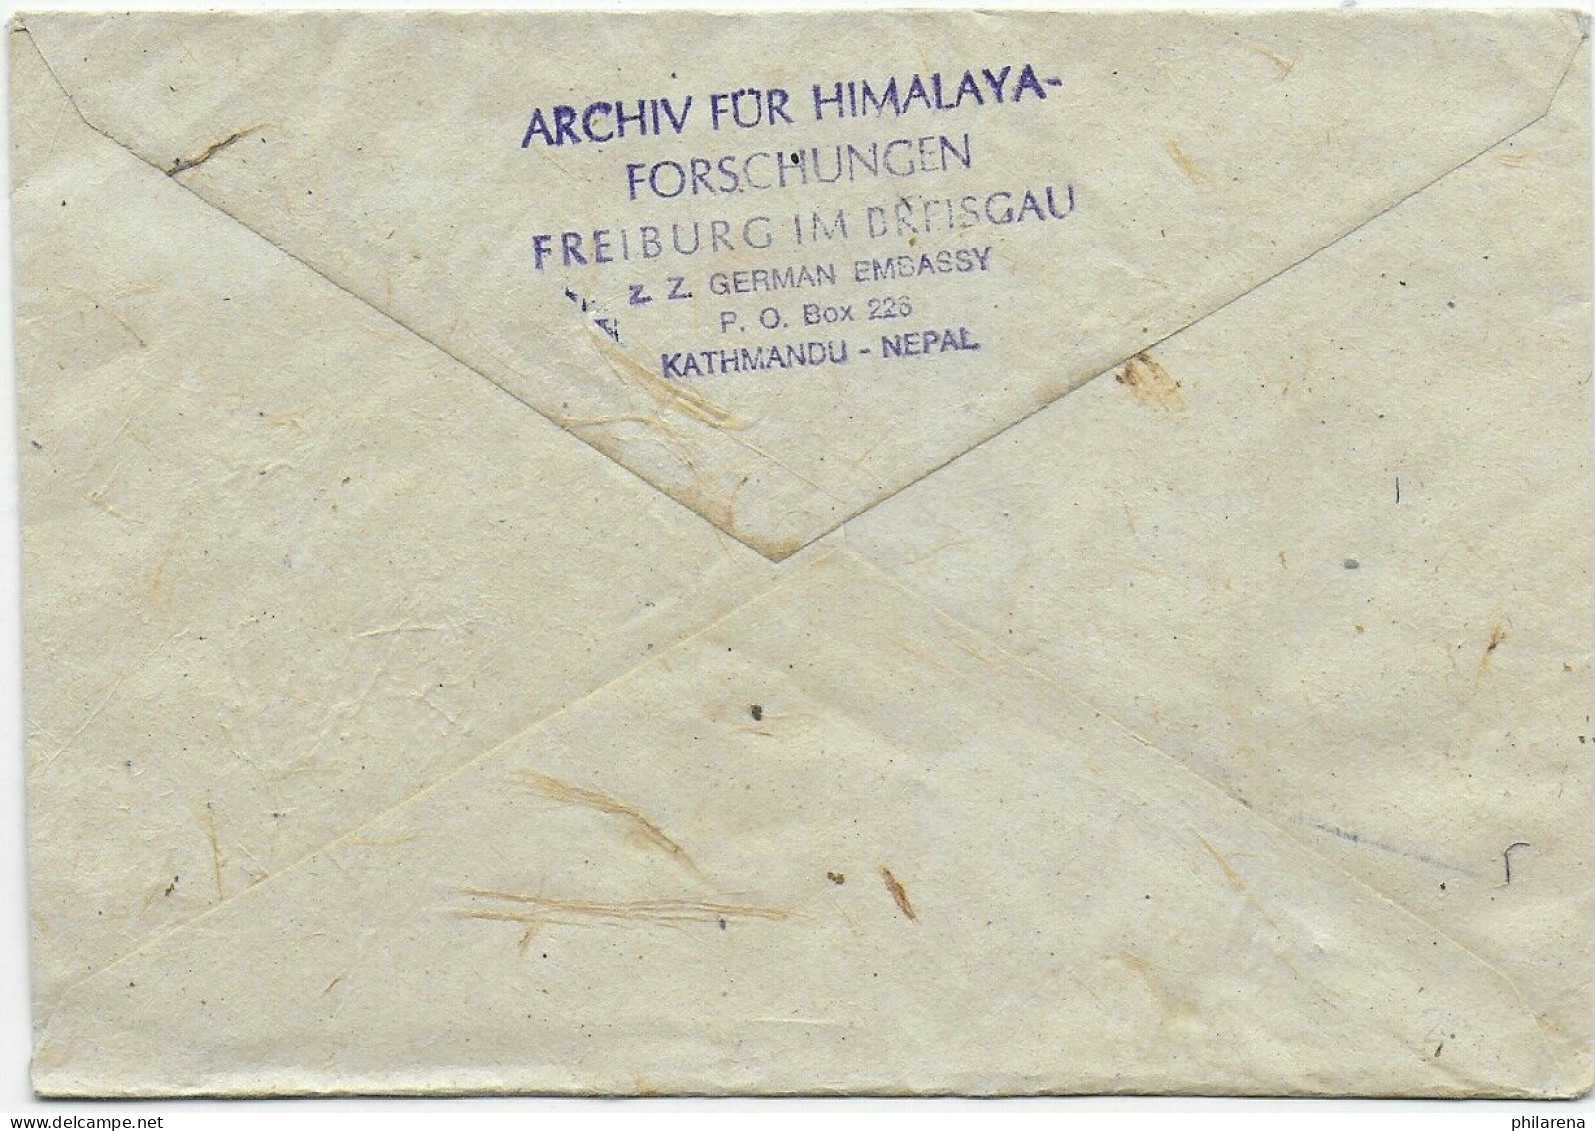 Book Post, Kathmandu, Deutsche Evererst Lhotse Expedition 1972, Air Mail - Nepal